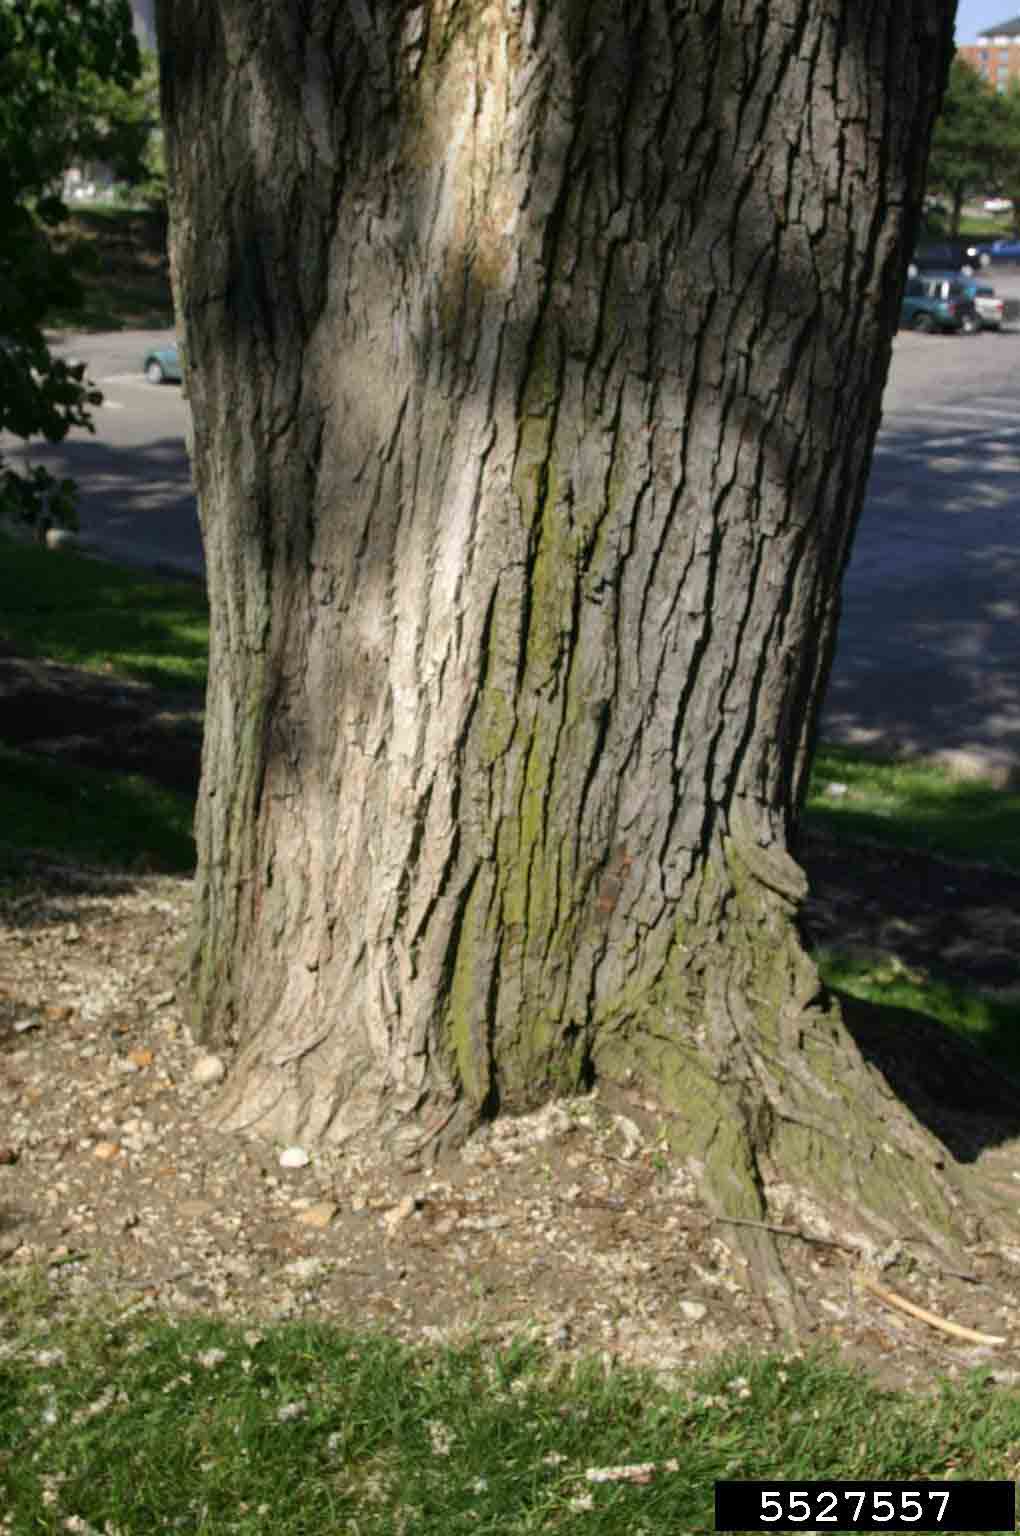 Eastern cottonwood bark on mature tree